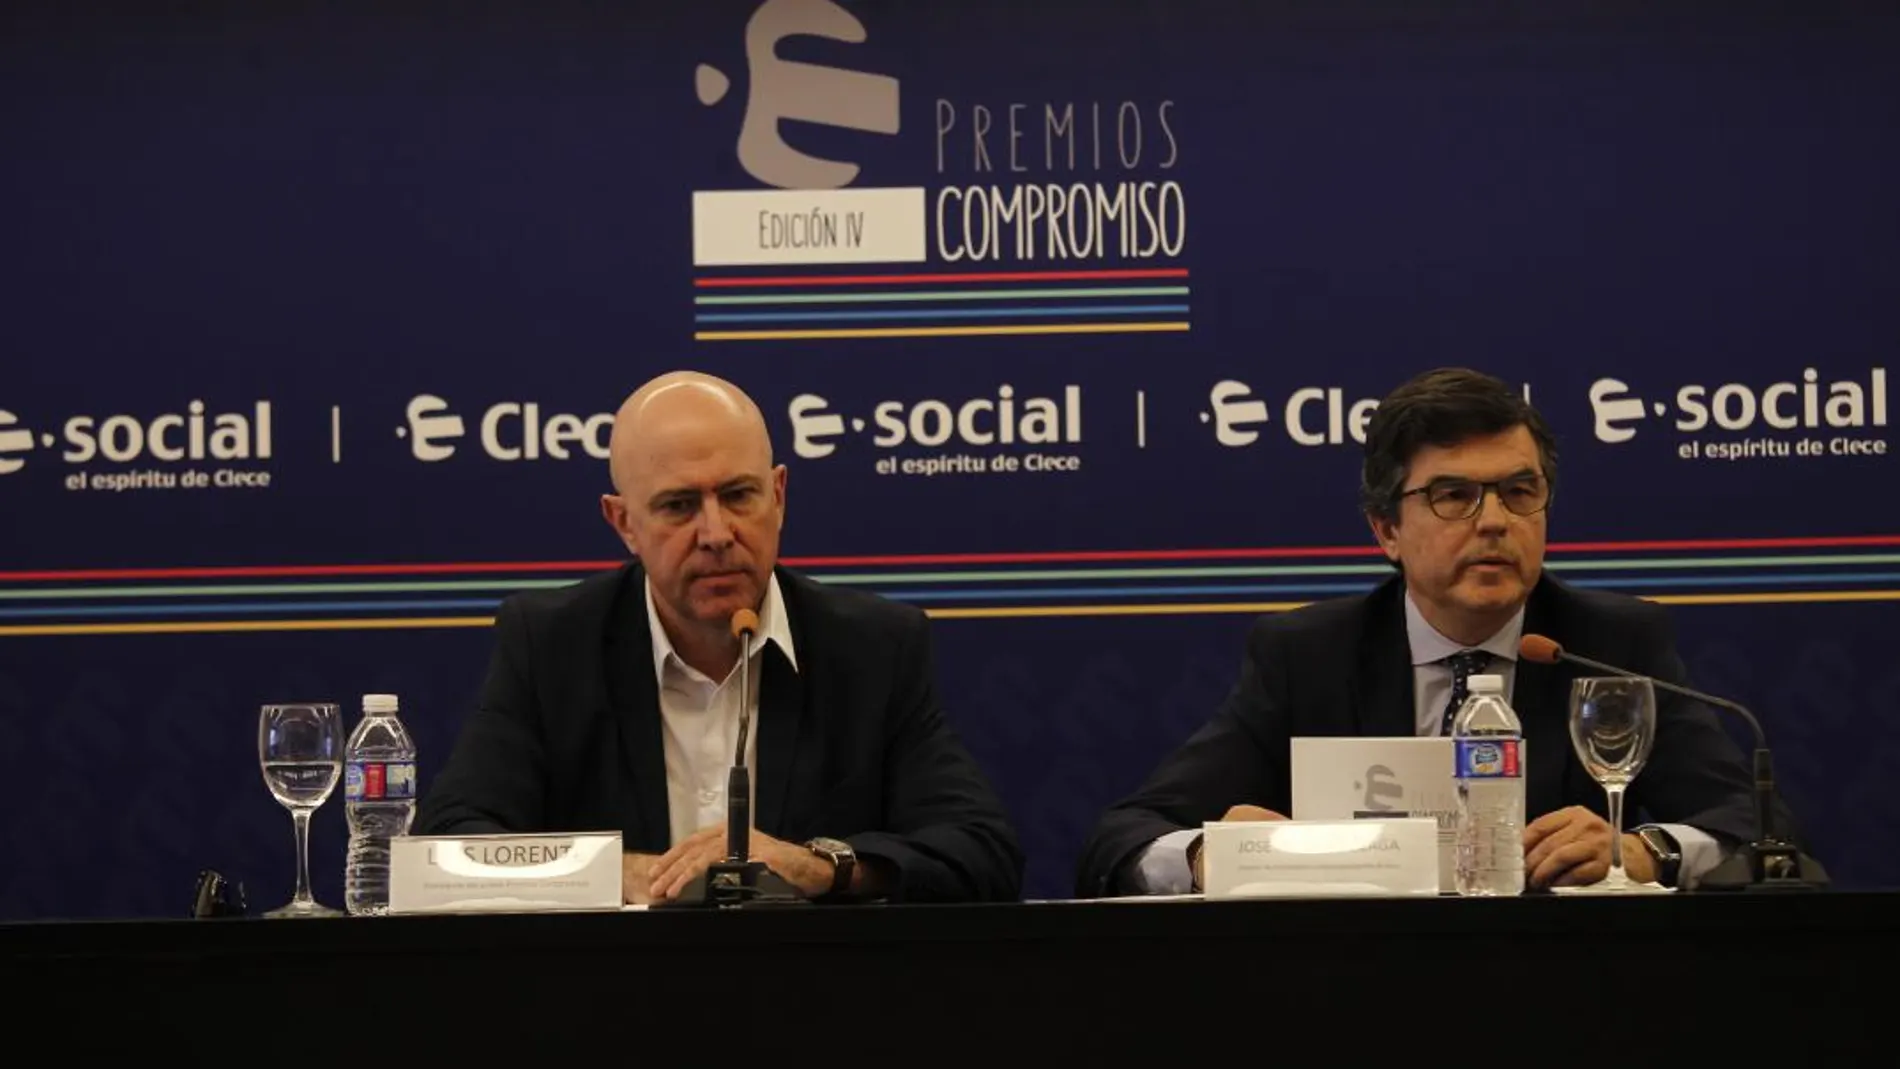 El productor y director Luis Lorente y José Andrés Elizaga, director de Comunicación de Clece